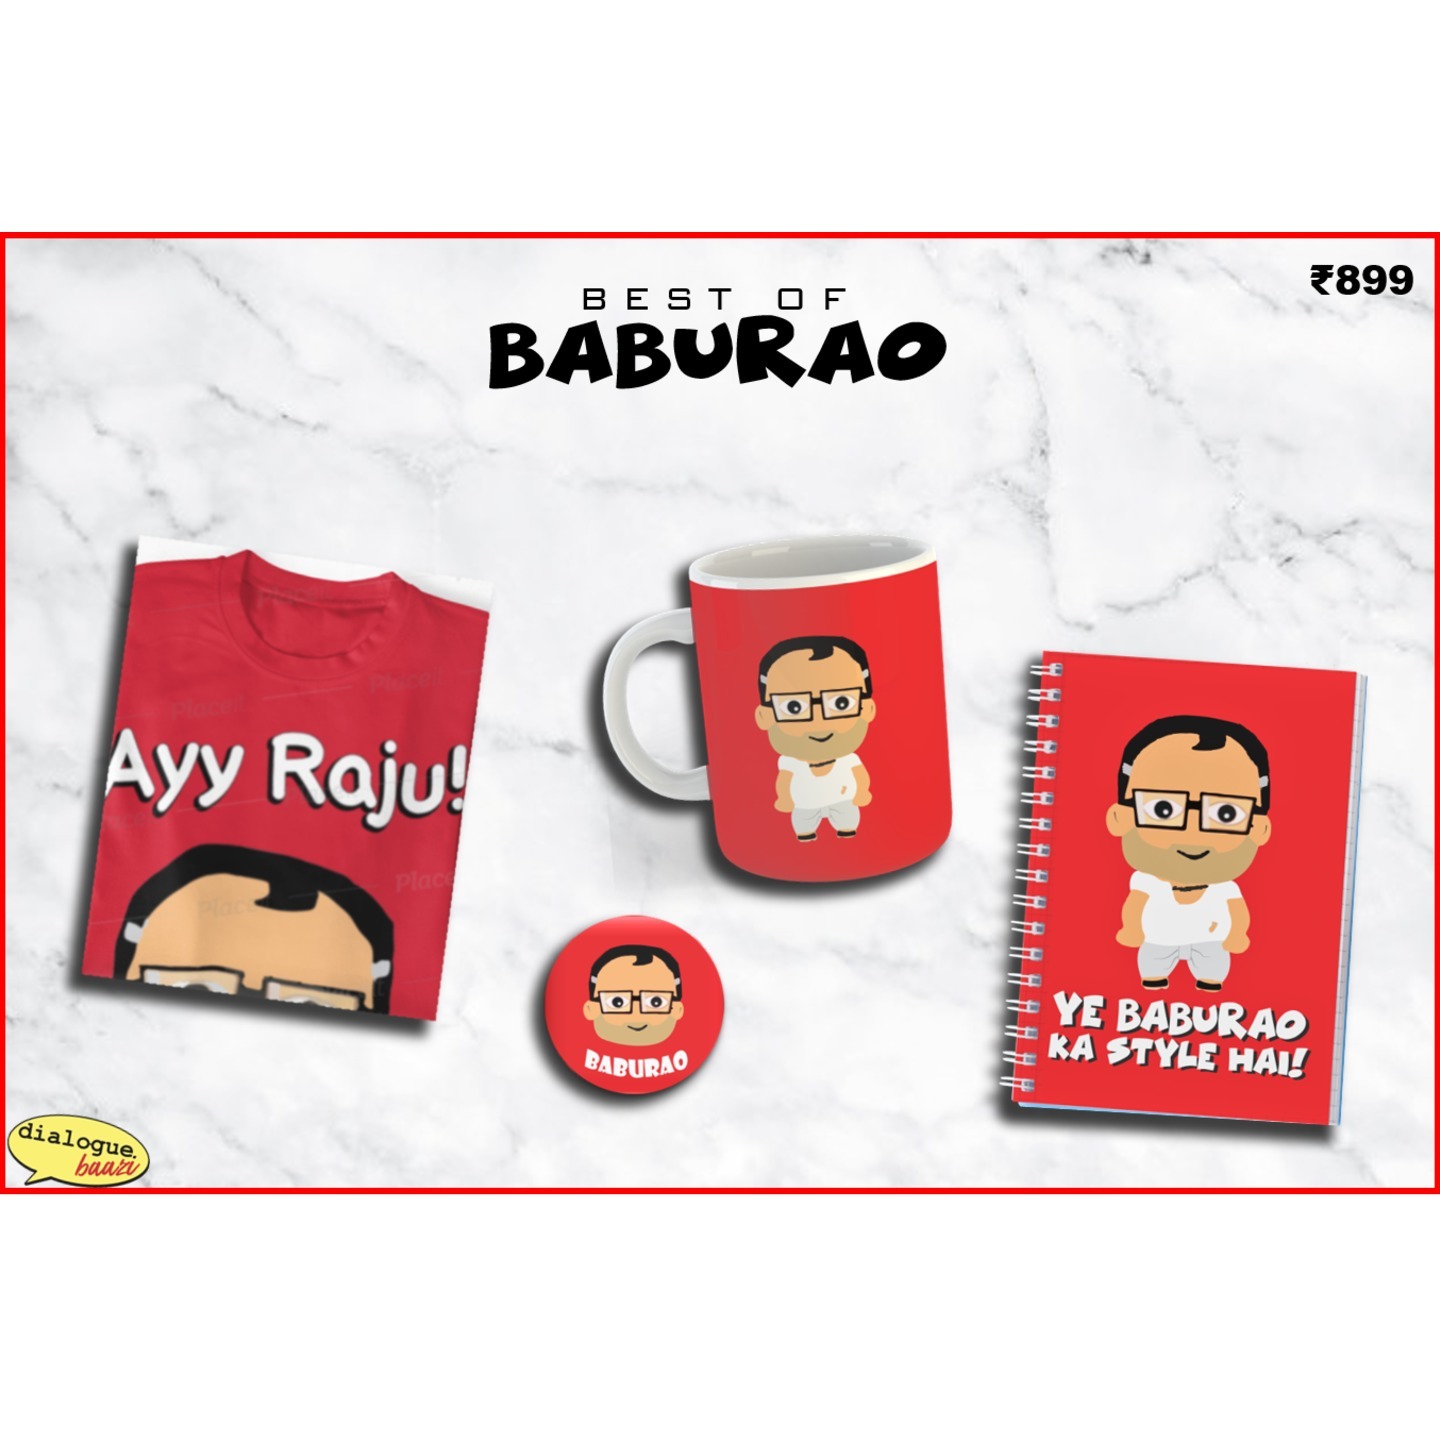 Best of Baburao